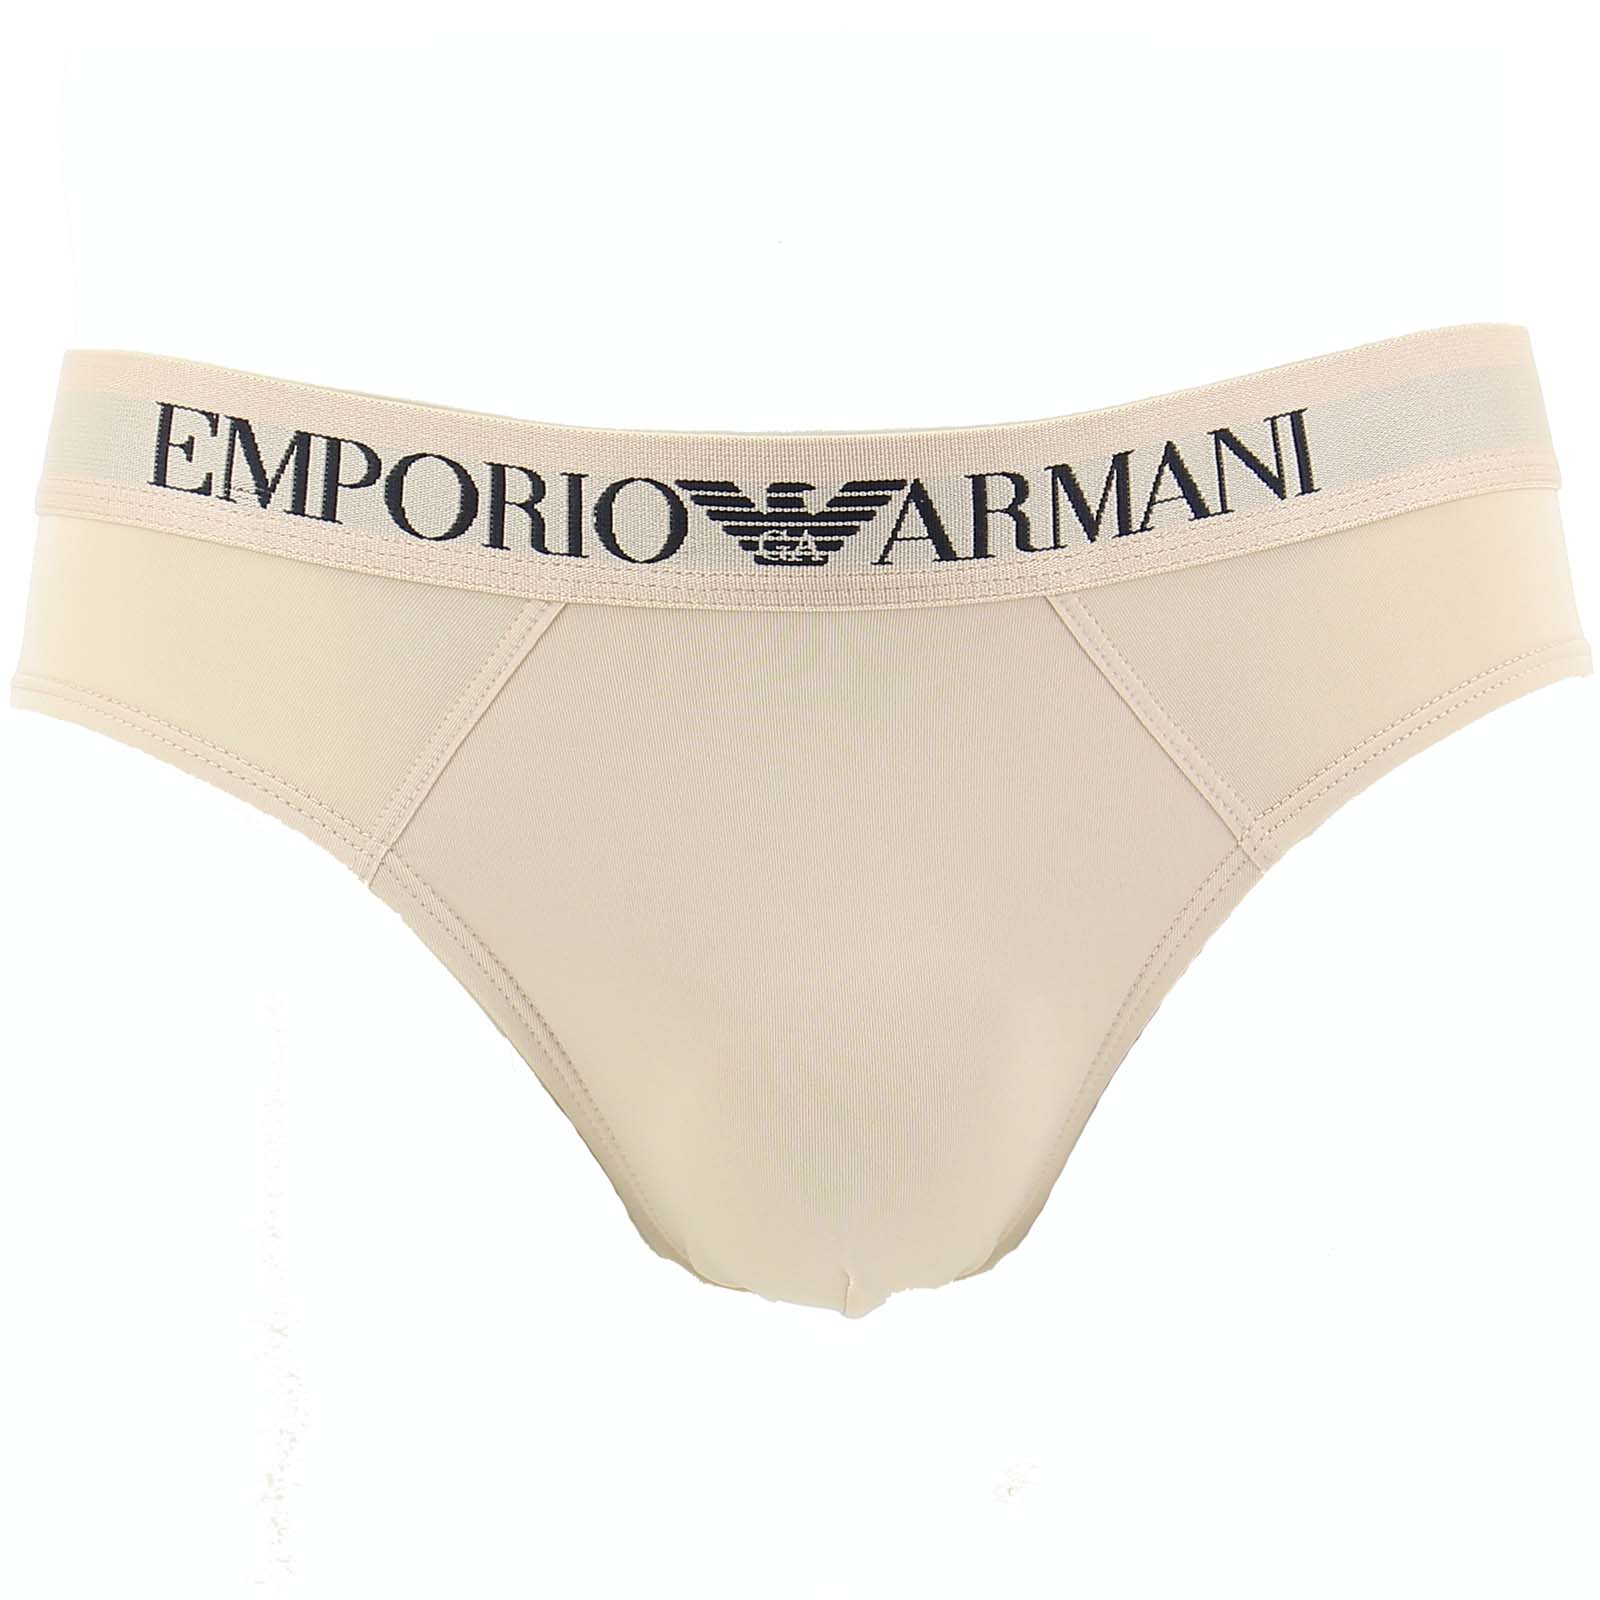 Brief Emporio Armani 111549 C747